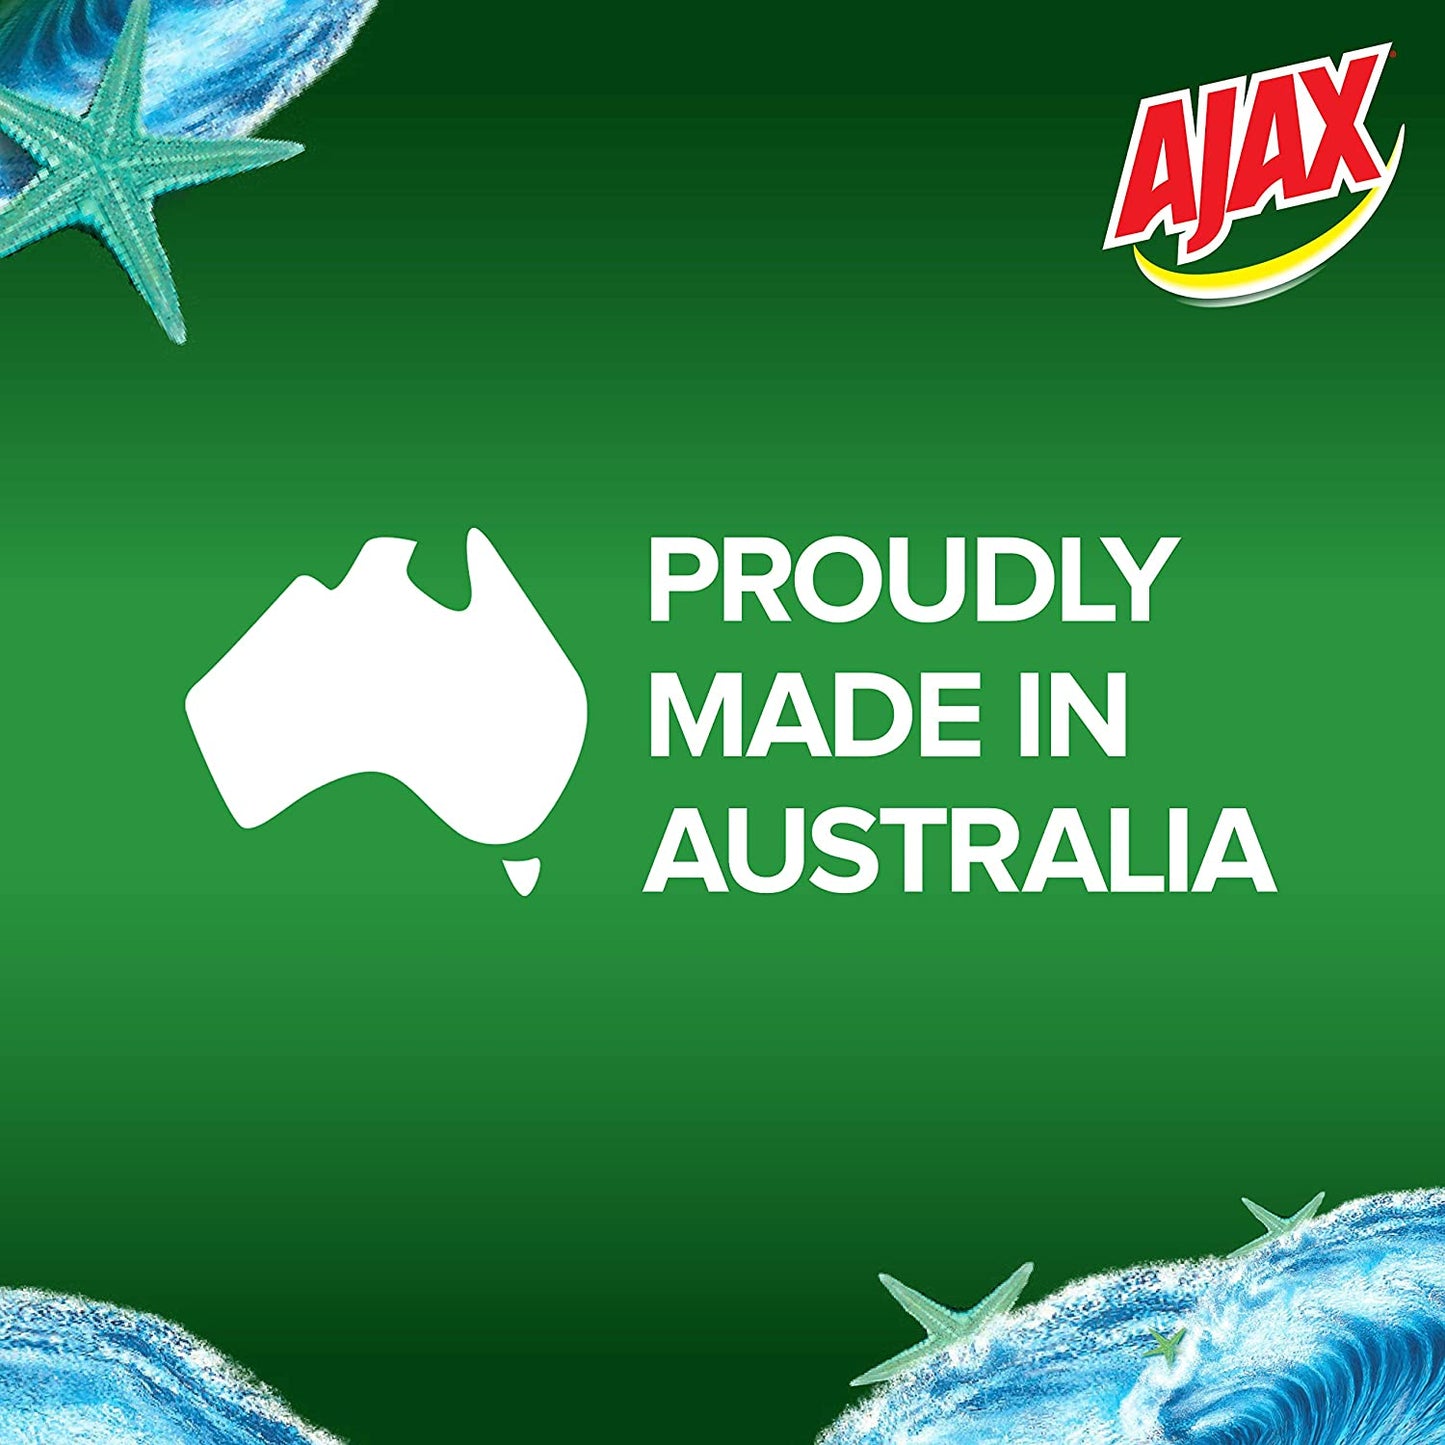 Ajax Spray n' Wipe Multi-Purpose Cleaner Refill, Value Pack 5L, Ocean Fresh